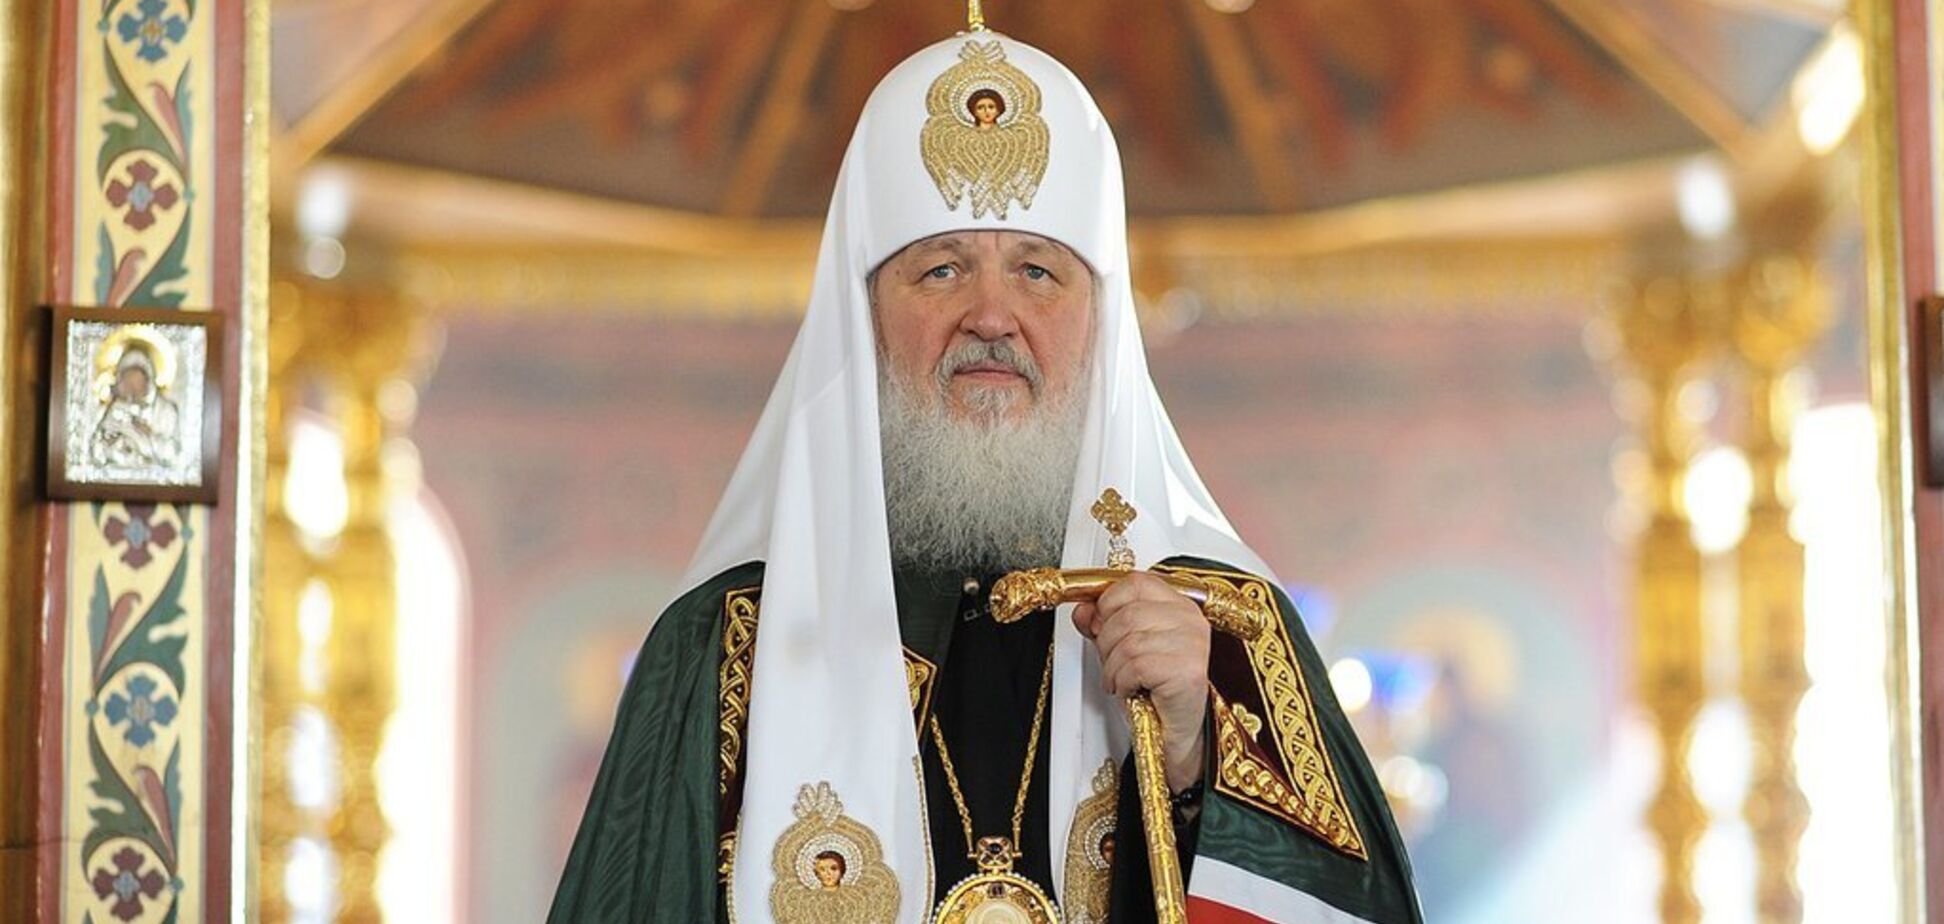 'Возлагаем большие надежды!' Патриарх Кирилл поздравил Зеленского